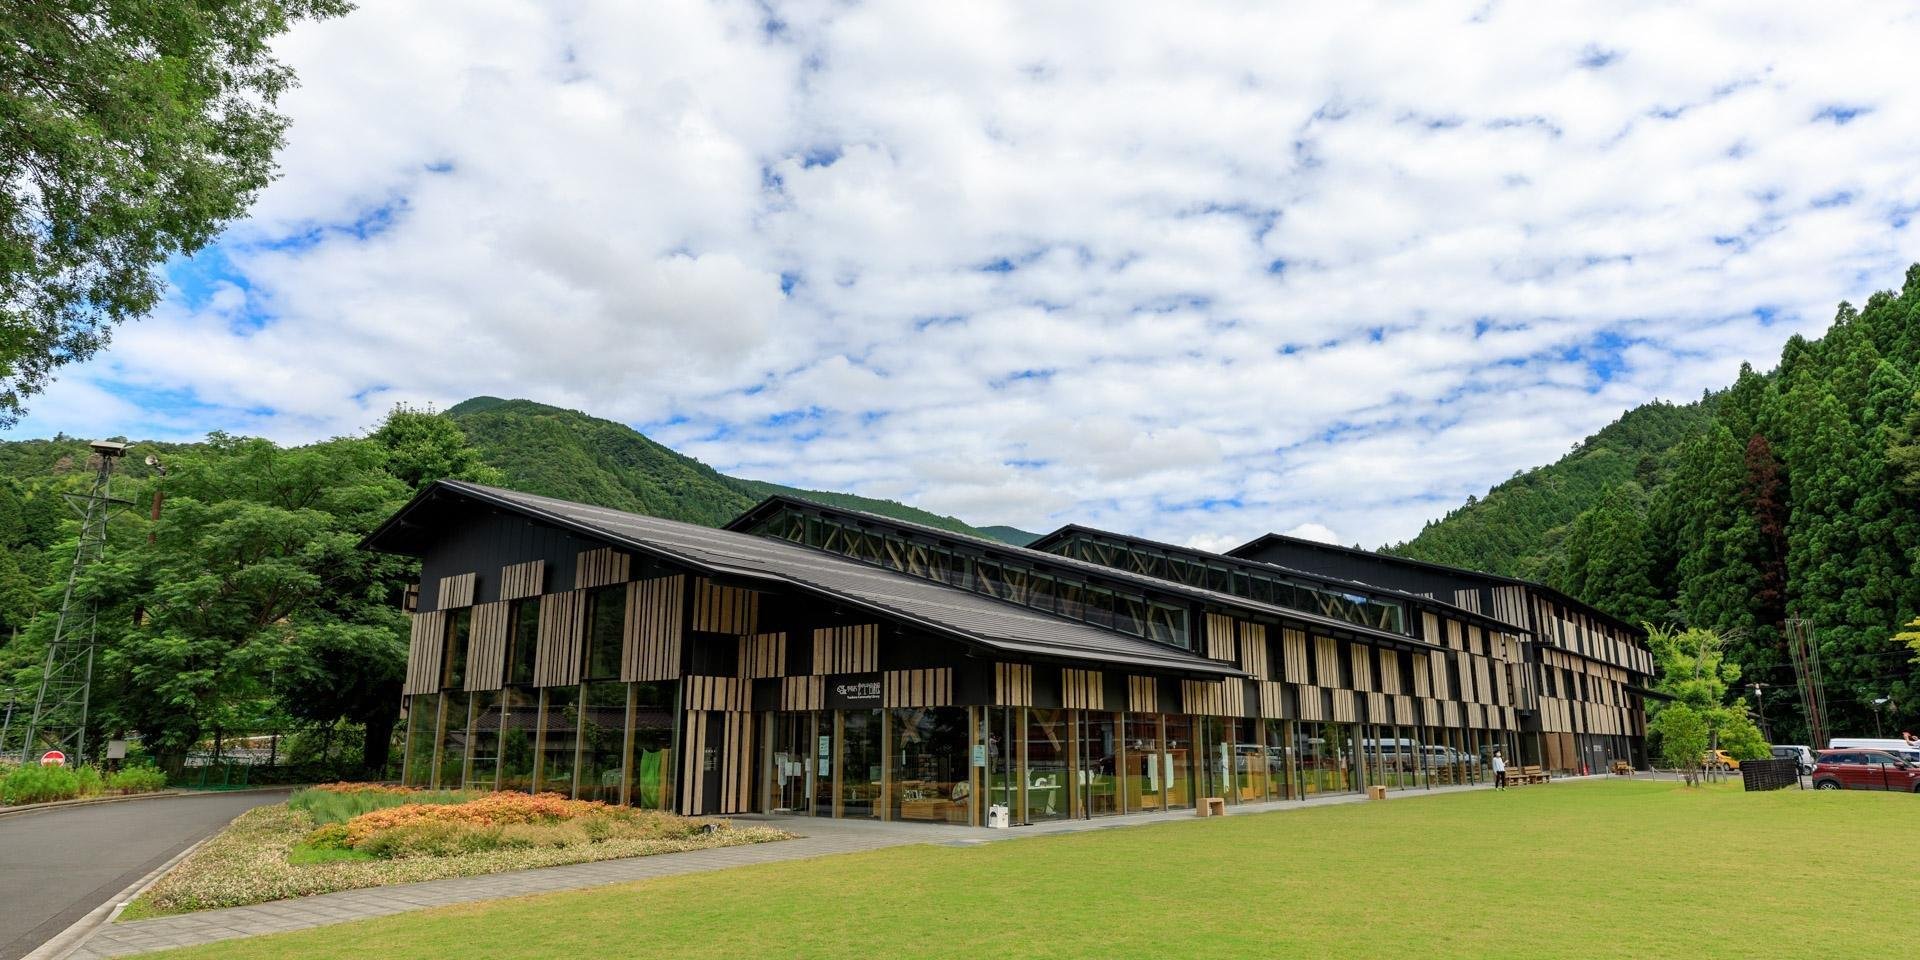 「구름 위의 마을ー유스하라정」에서 일본의 유명 건축가 쿠마 켄고가 설계한 6개 건물을 만나 보세요.